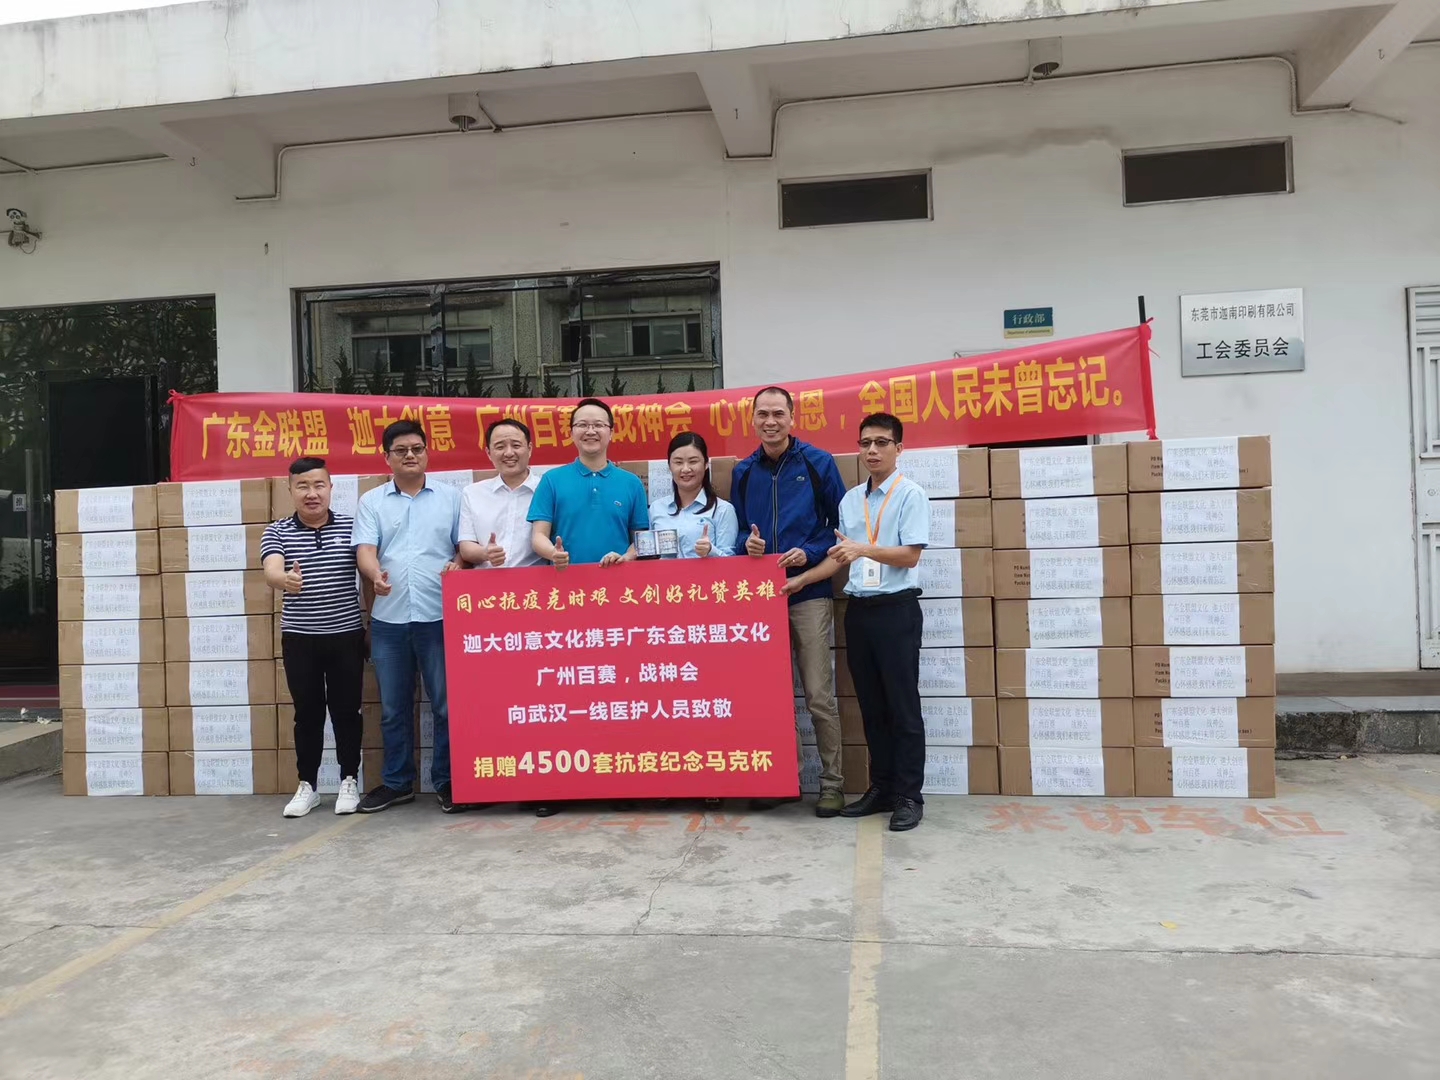 迦大文创联合兄弟公司向武汉一线医护人员捐赠4500套抗疫纪念马克杯